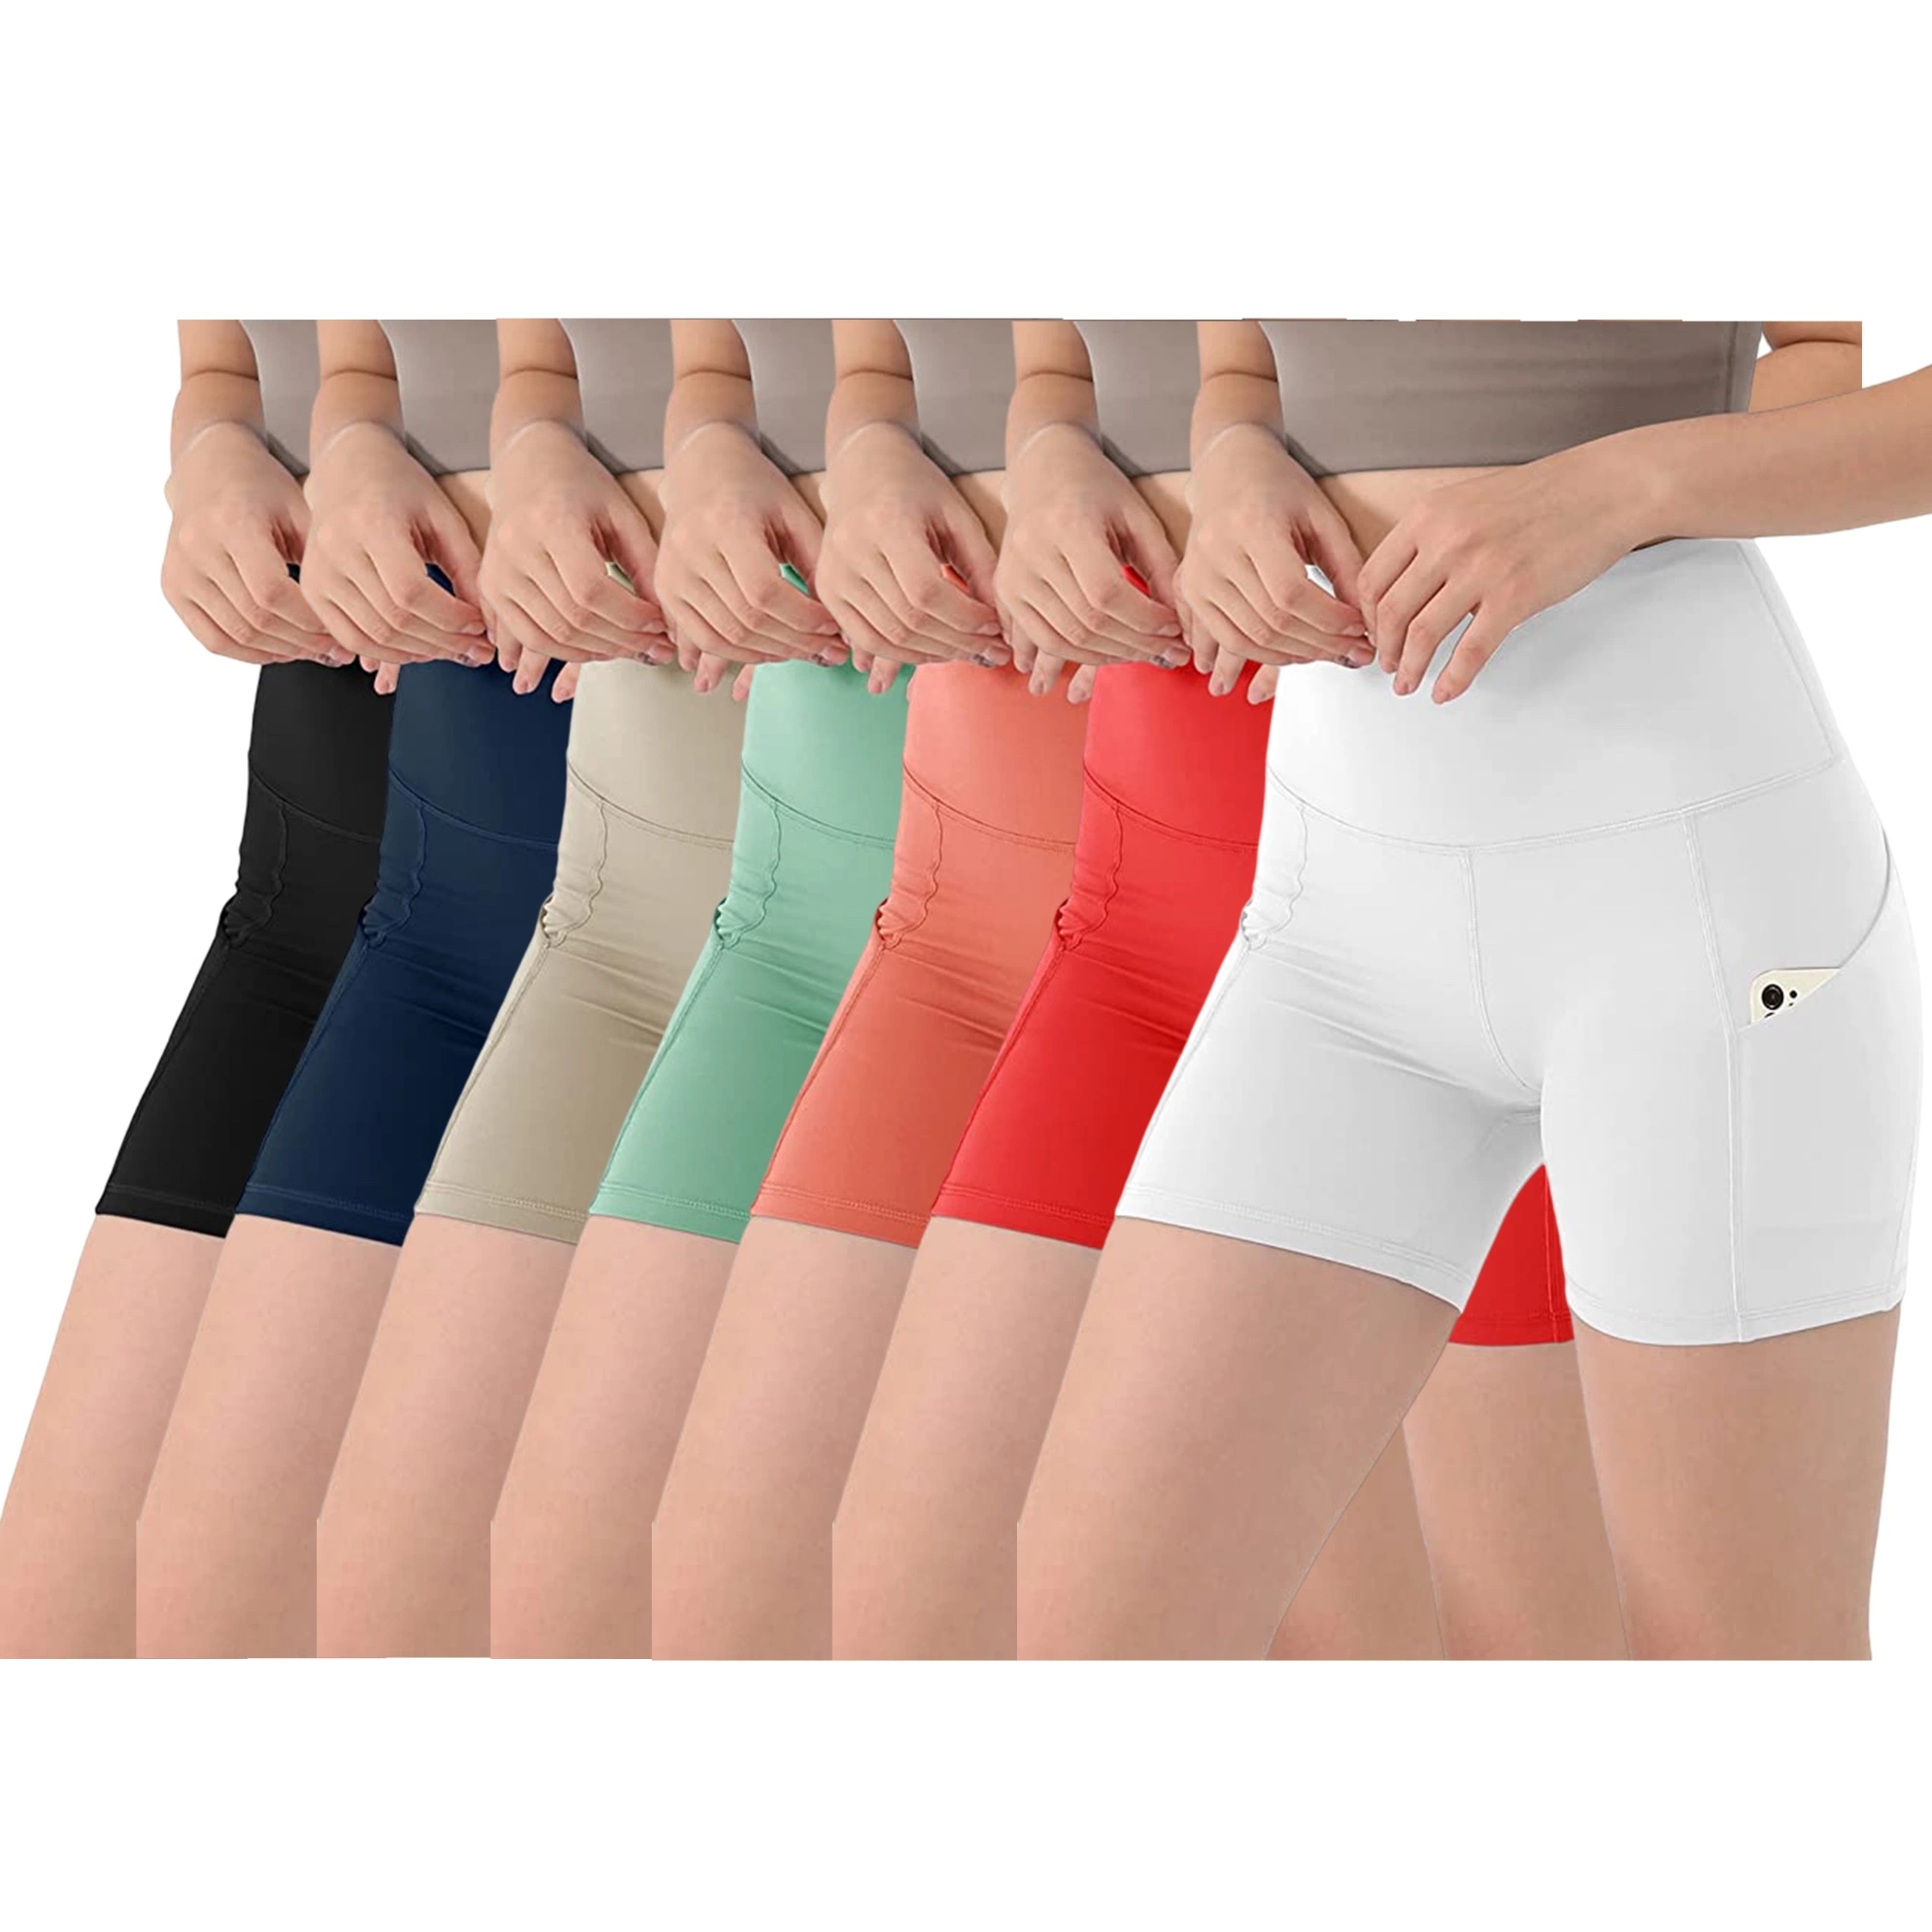 Premium Damen High Waist Biker Shorts mit Taschen Bauch Control Workout Gym Athletic Running Yoga Shorts Bekleidung Bekleidung Bekleidung für Großhandelspreis